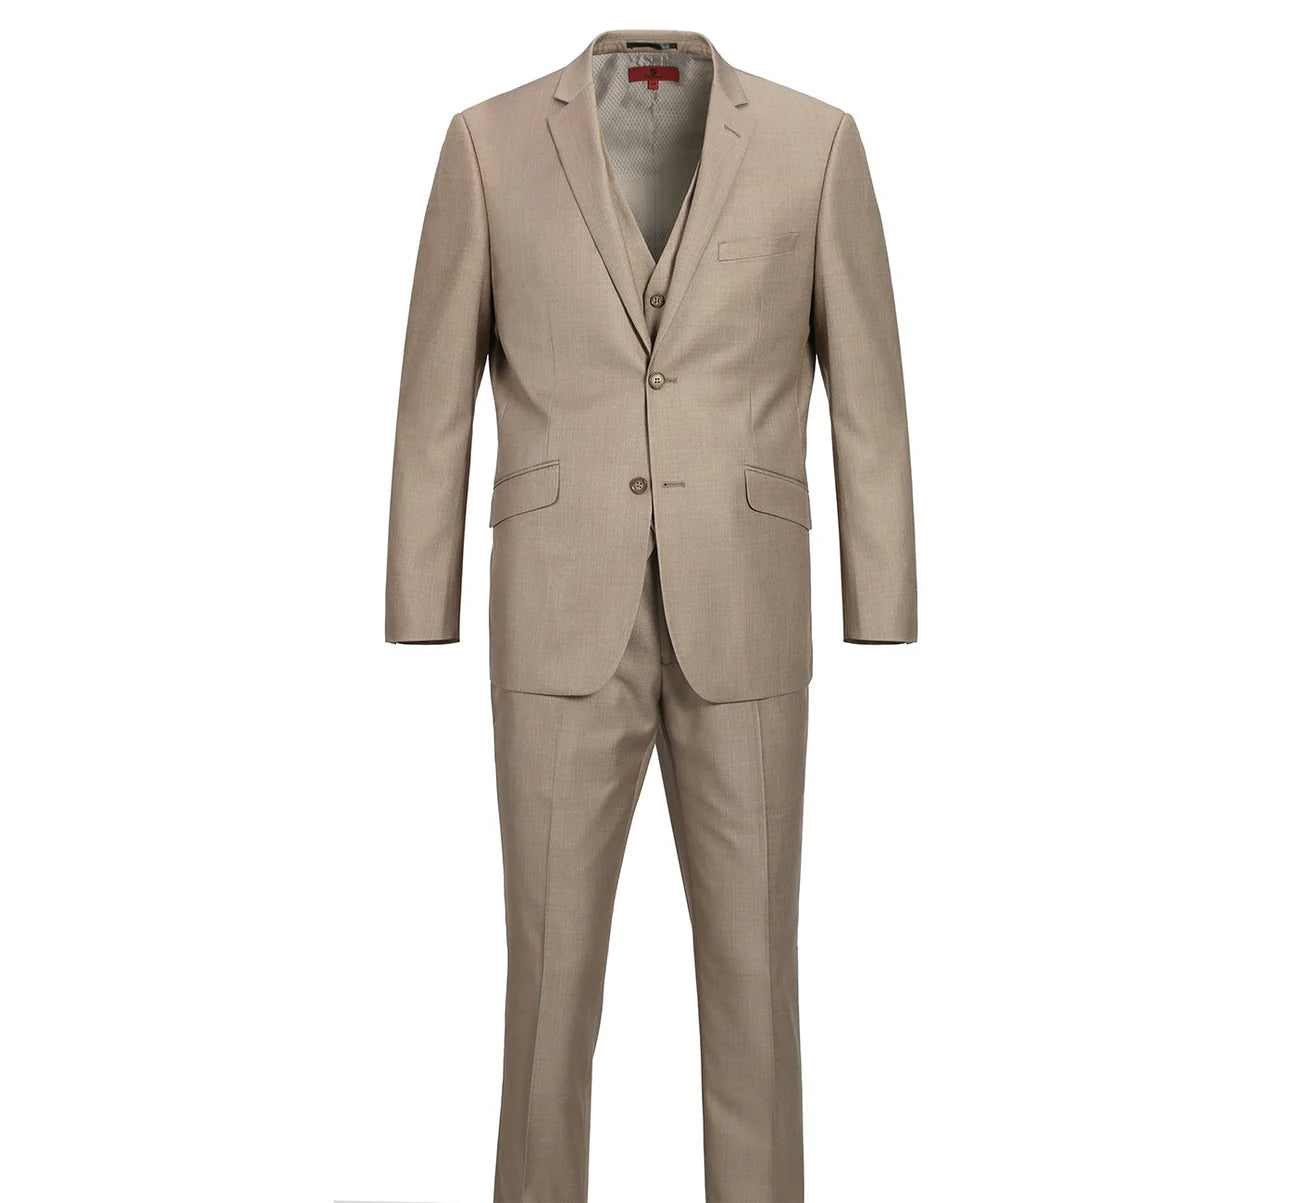 Renoir Slim Fit Light Brown 2 Button Notch Lapel Suit